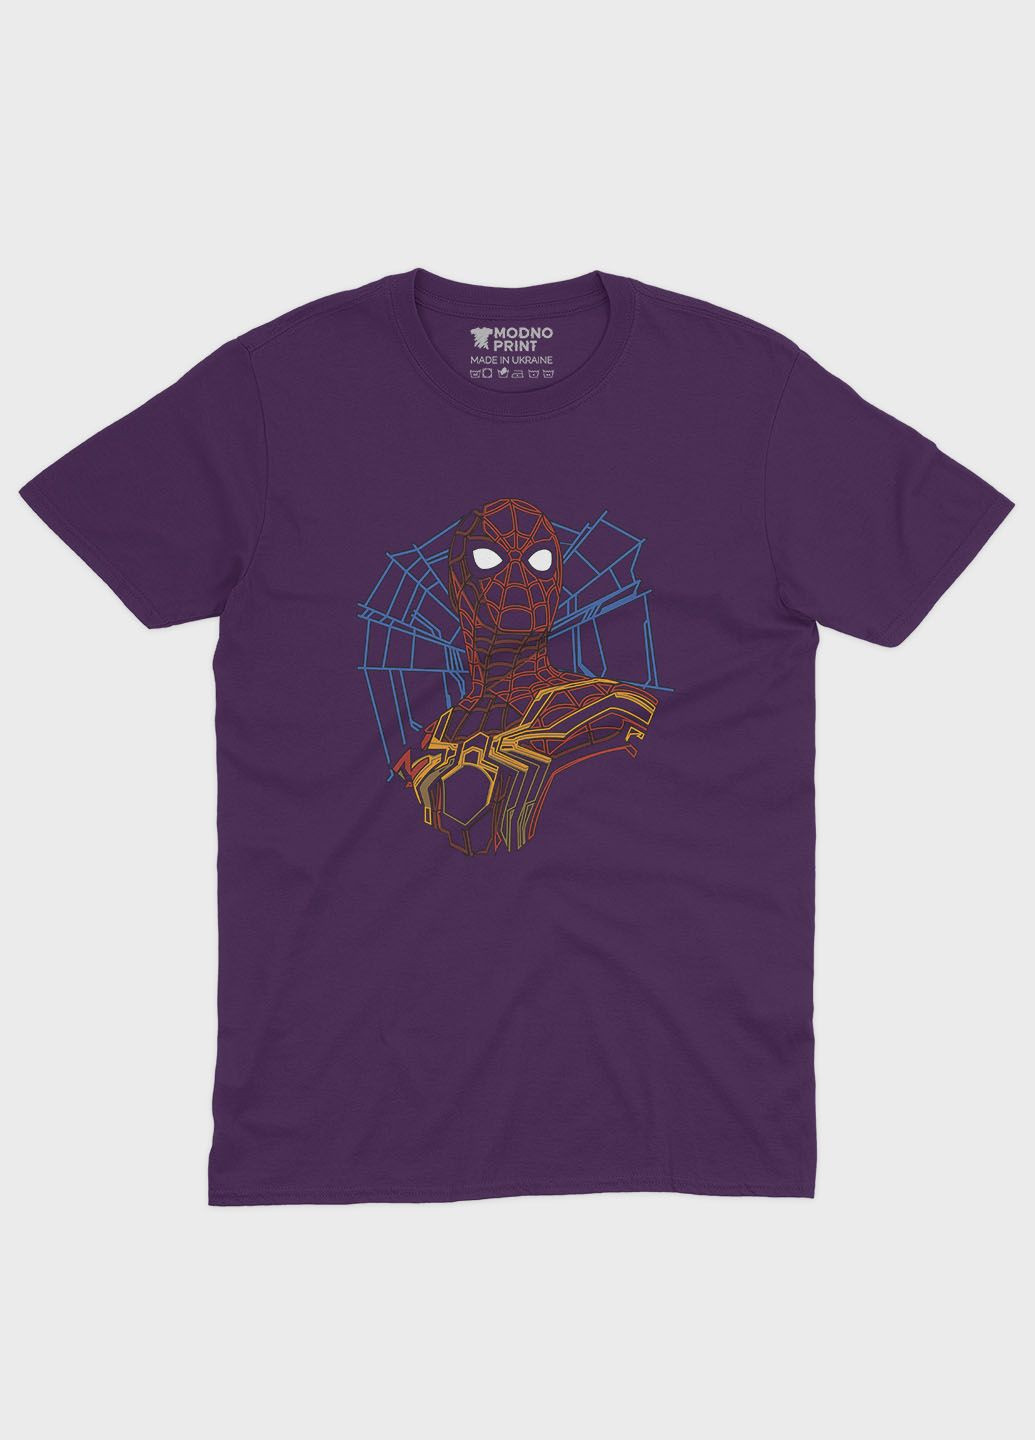 Фиолетовая демисезонная футболка для девочки с принтом супергероя - человек-паук (ts001-1-dby-006-014-007-g) Modno